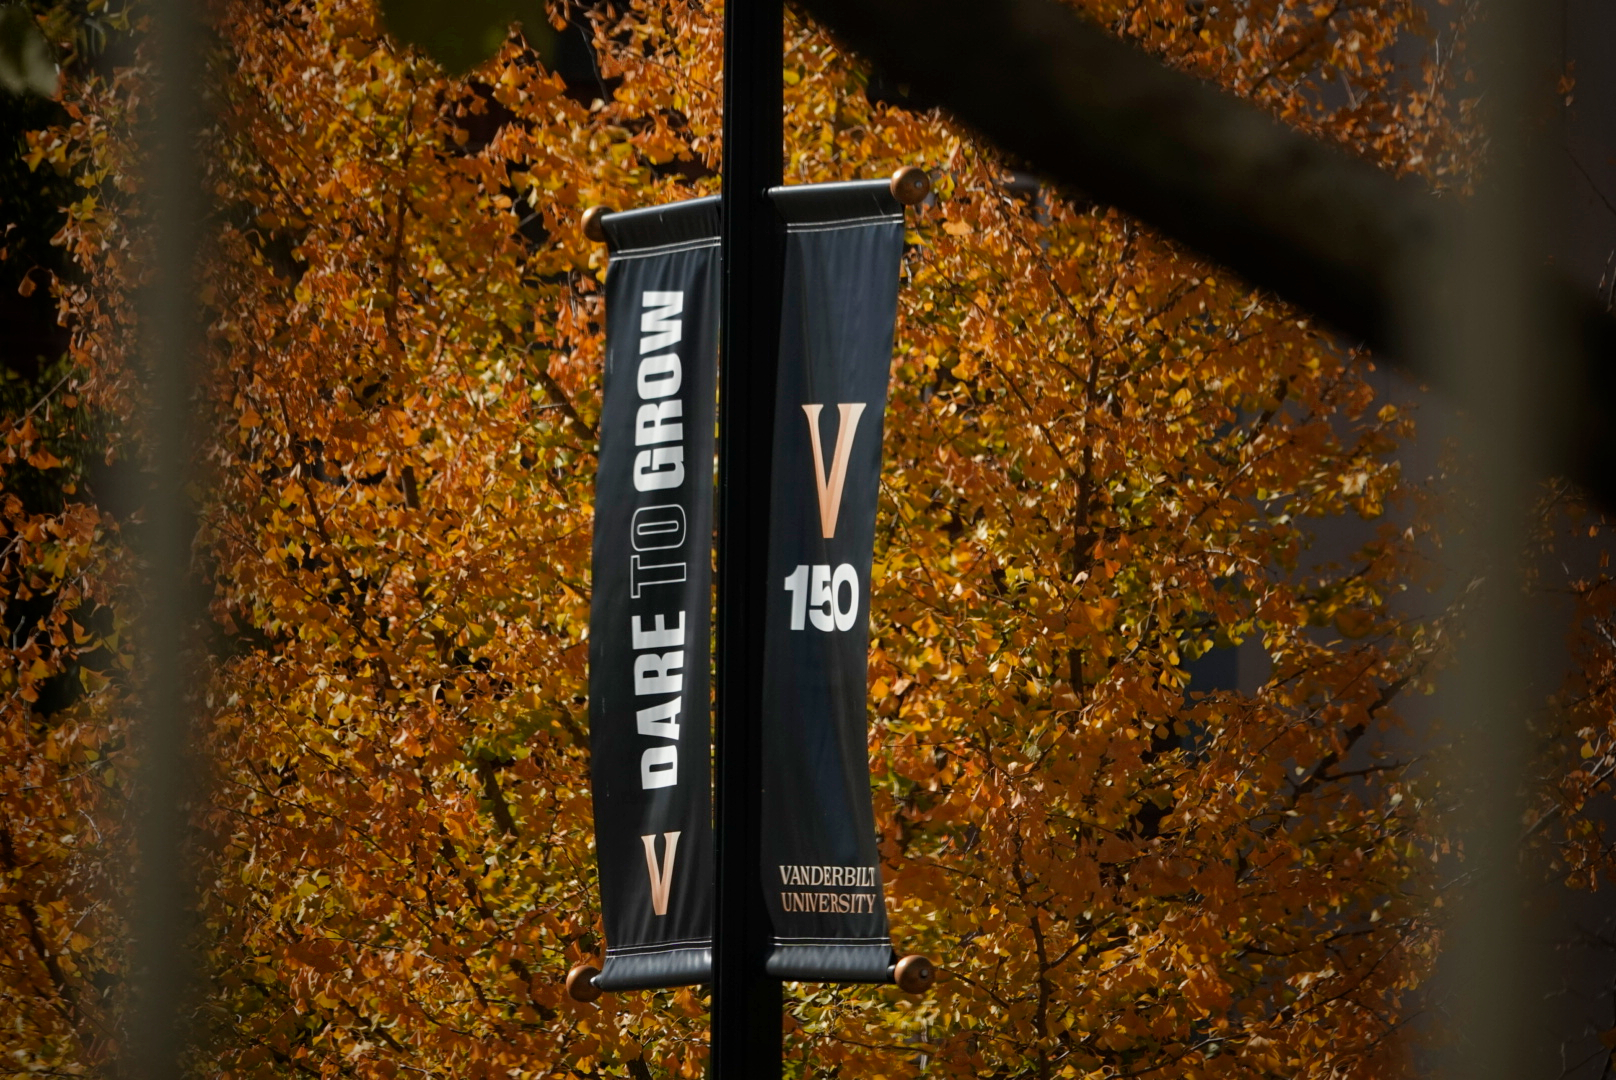 Vanderbilt 150 banner sits on a pole, as captured on Nov. 4, 2023. (Hustler Multimedia/George Albu)